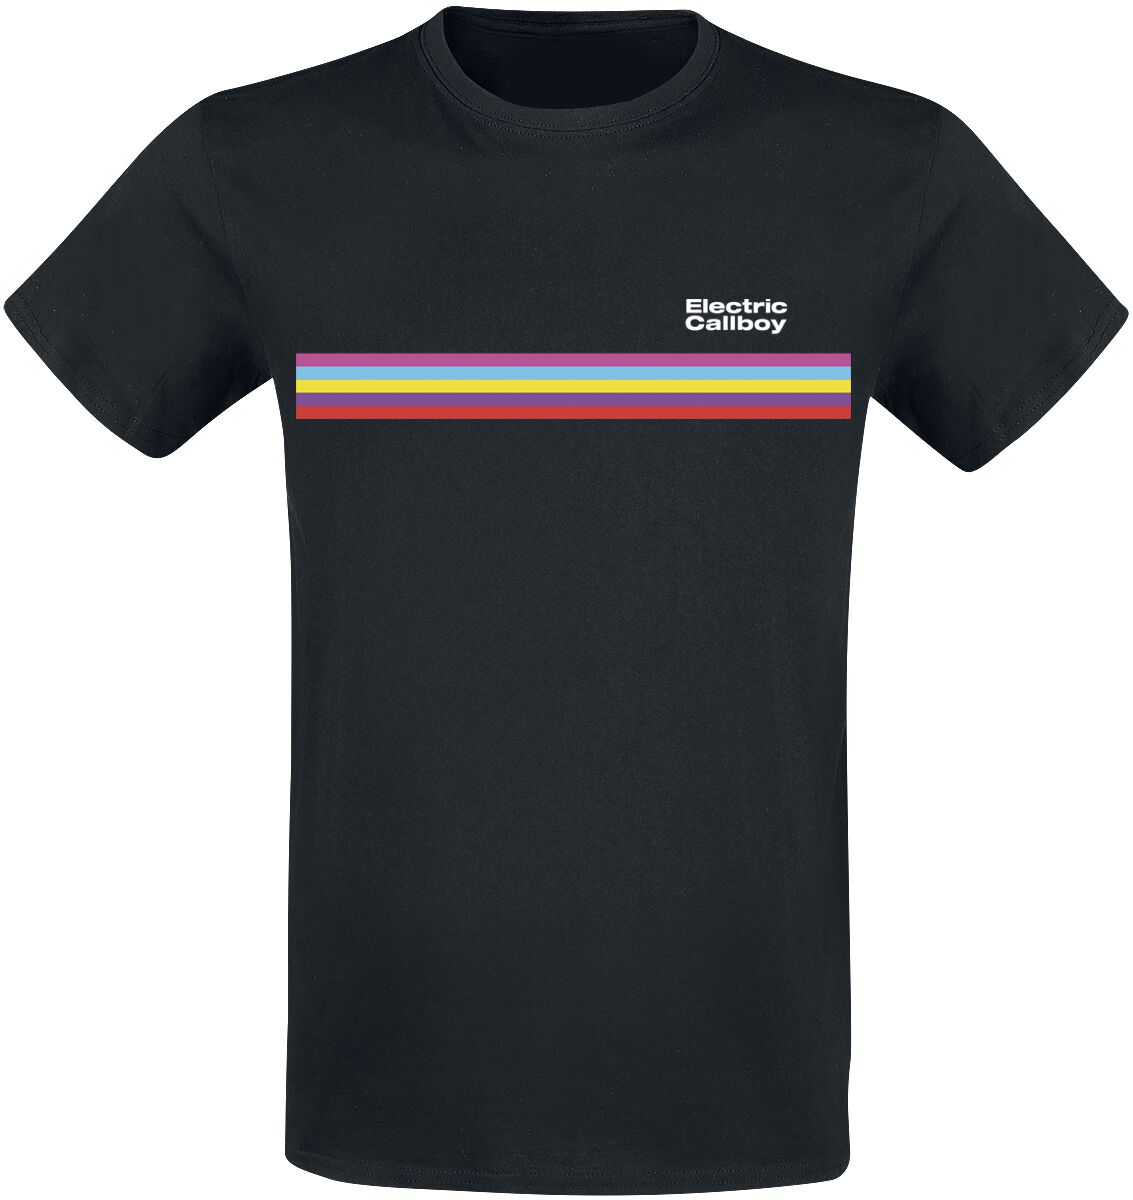 Electric Callboy T-Shirt - Stripe - S bis 3XL - für Männer - Größe XL - schwarz  - Lizenziertes Merchandise!